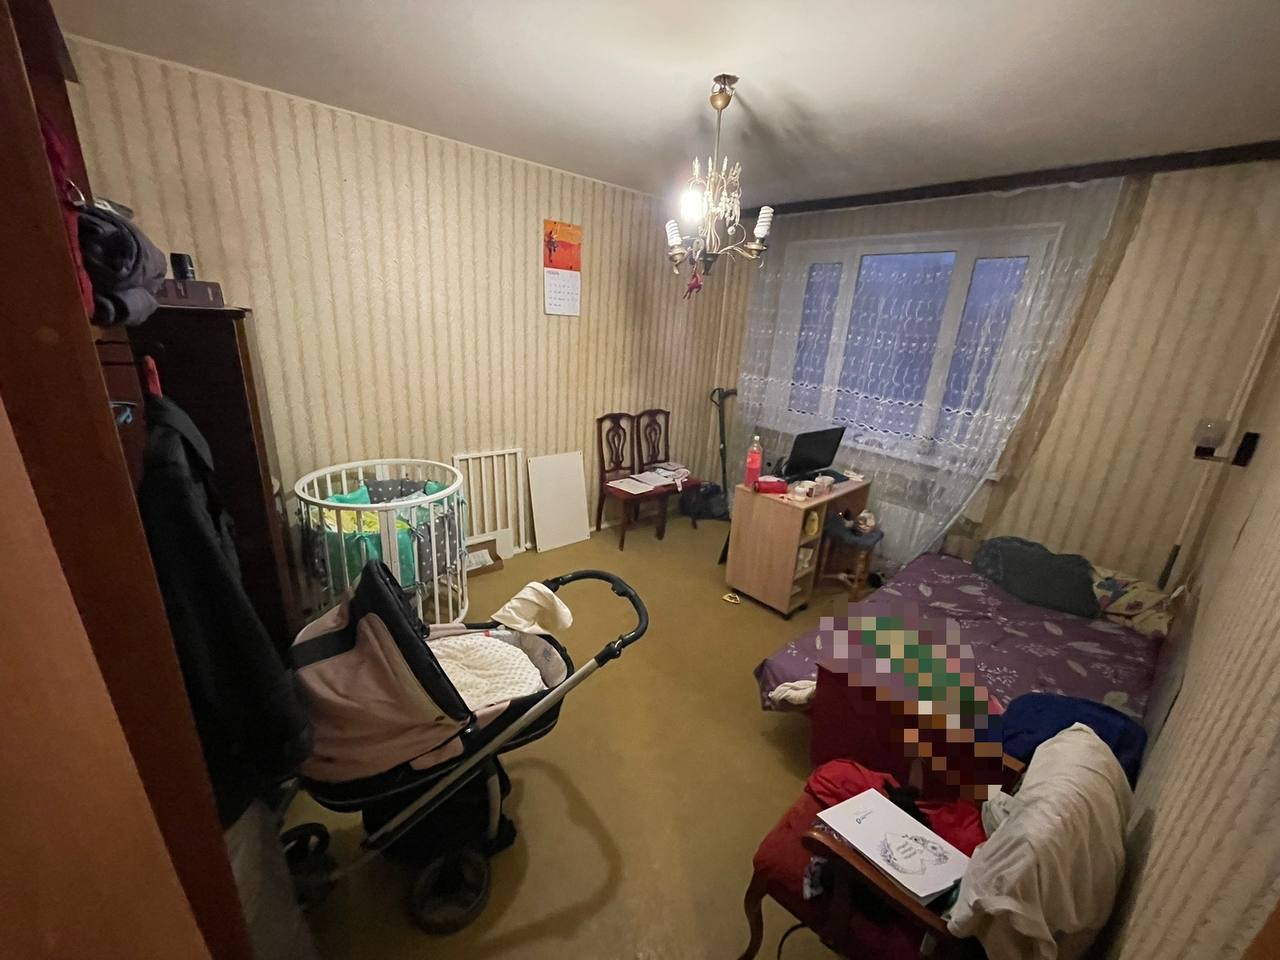 Младенец найден мёртвым в одной из квартир в Москве